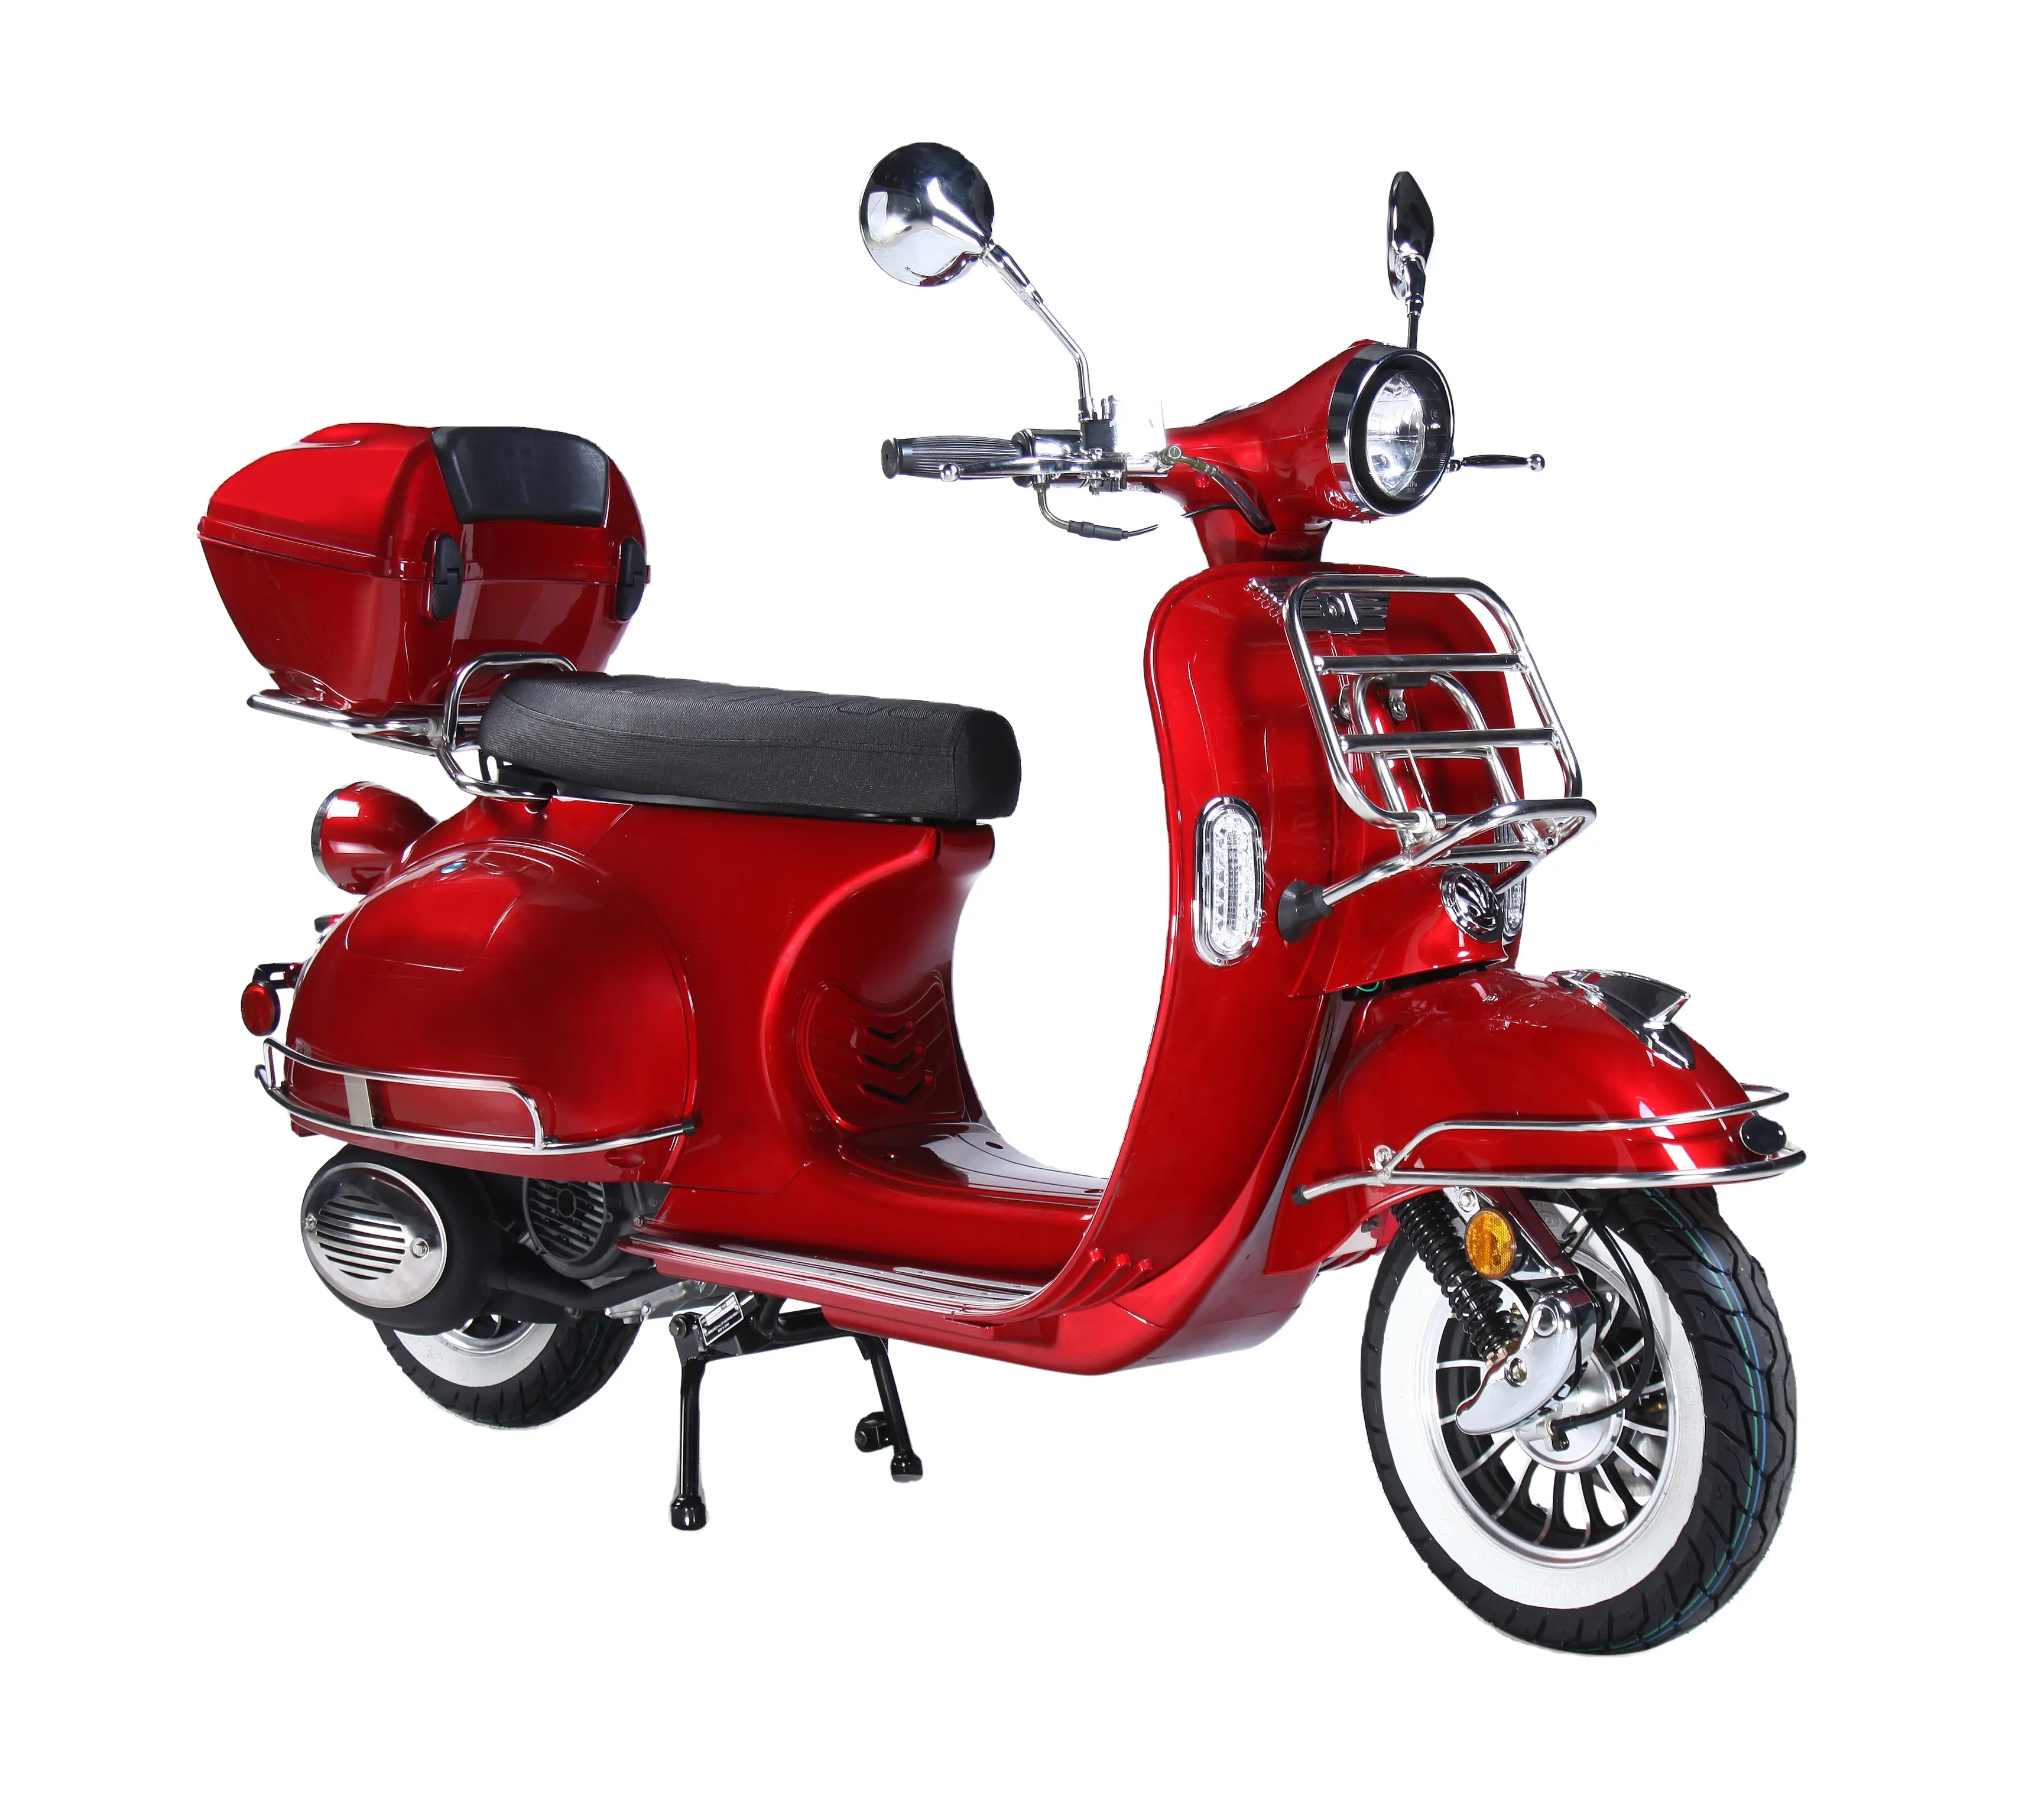 Amoto motore moto 125cc ad alta velocità ves pa motor bike moto scooter alimentato a gas per adulti